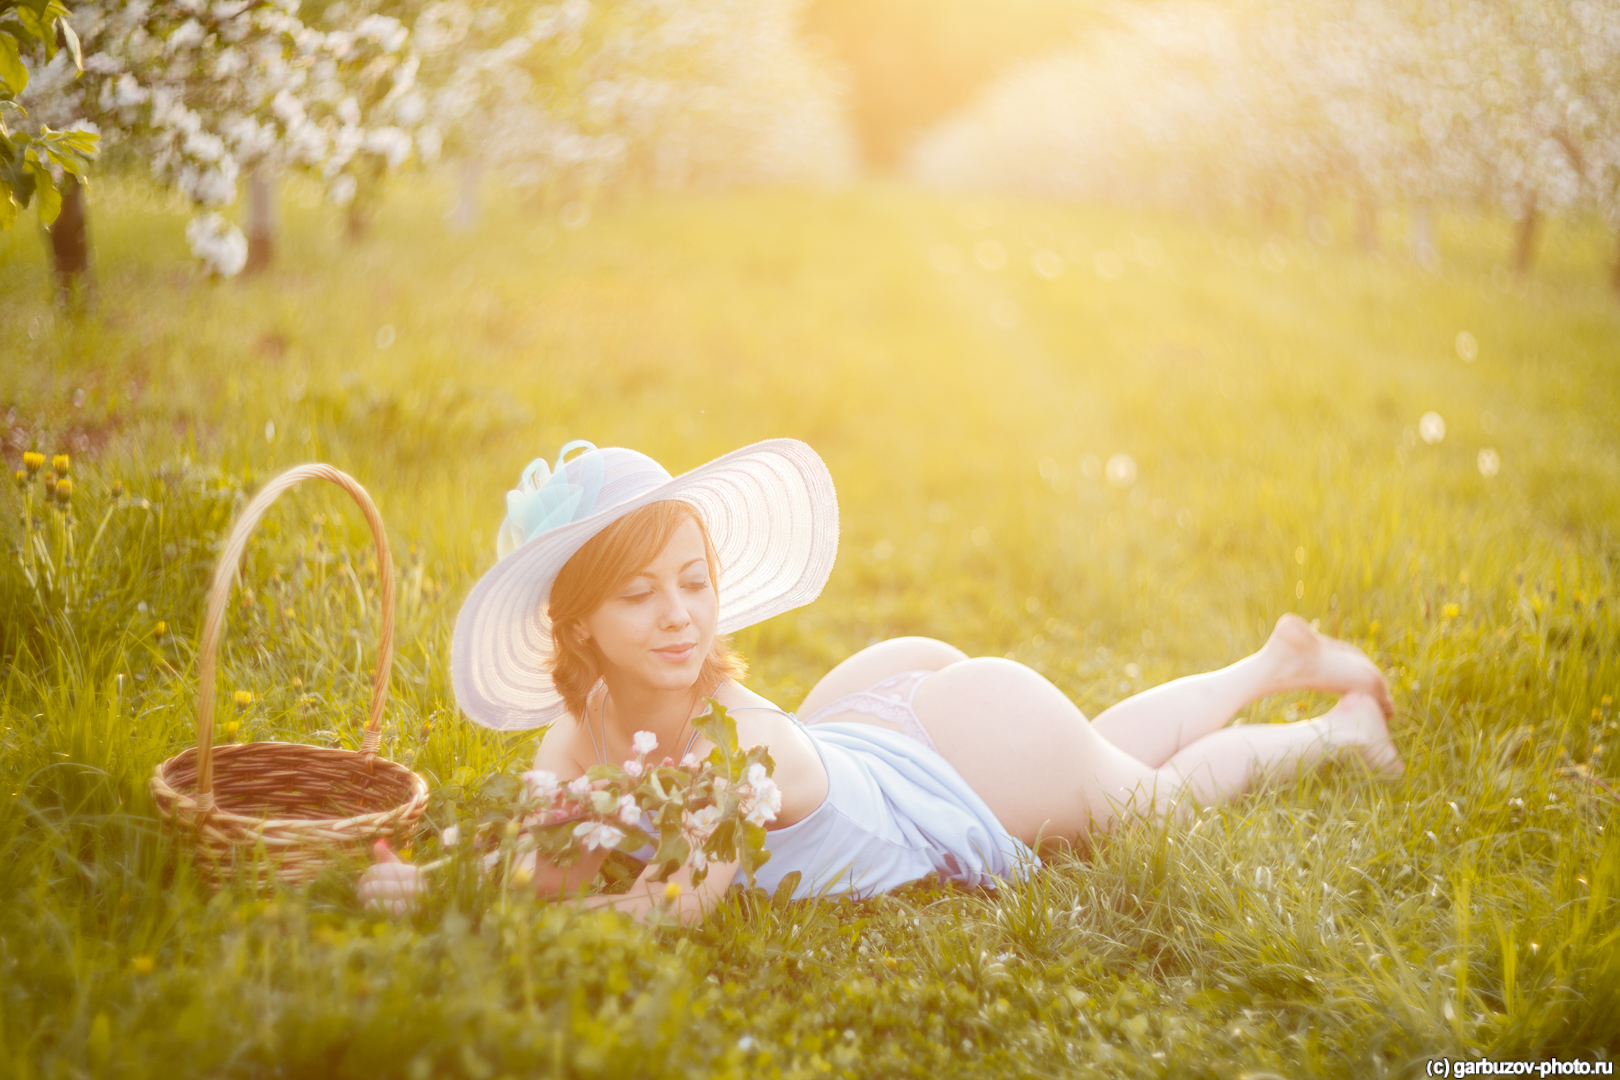 Фото голенькой девушки в цветущем саду